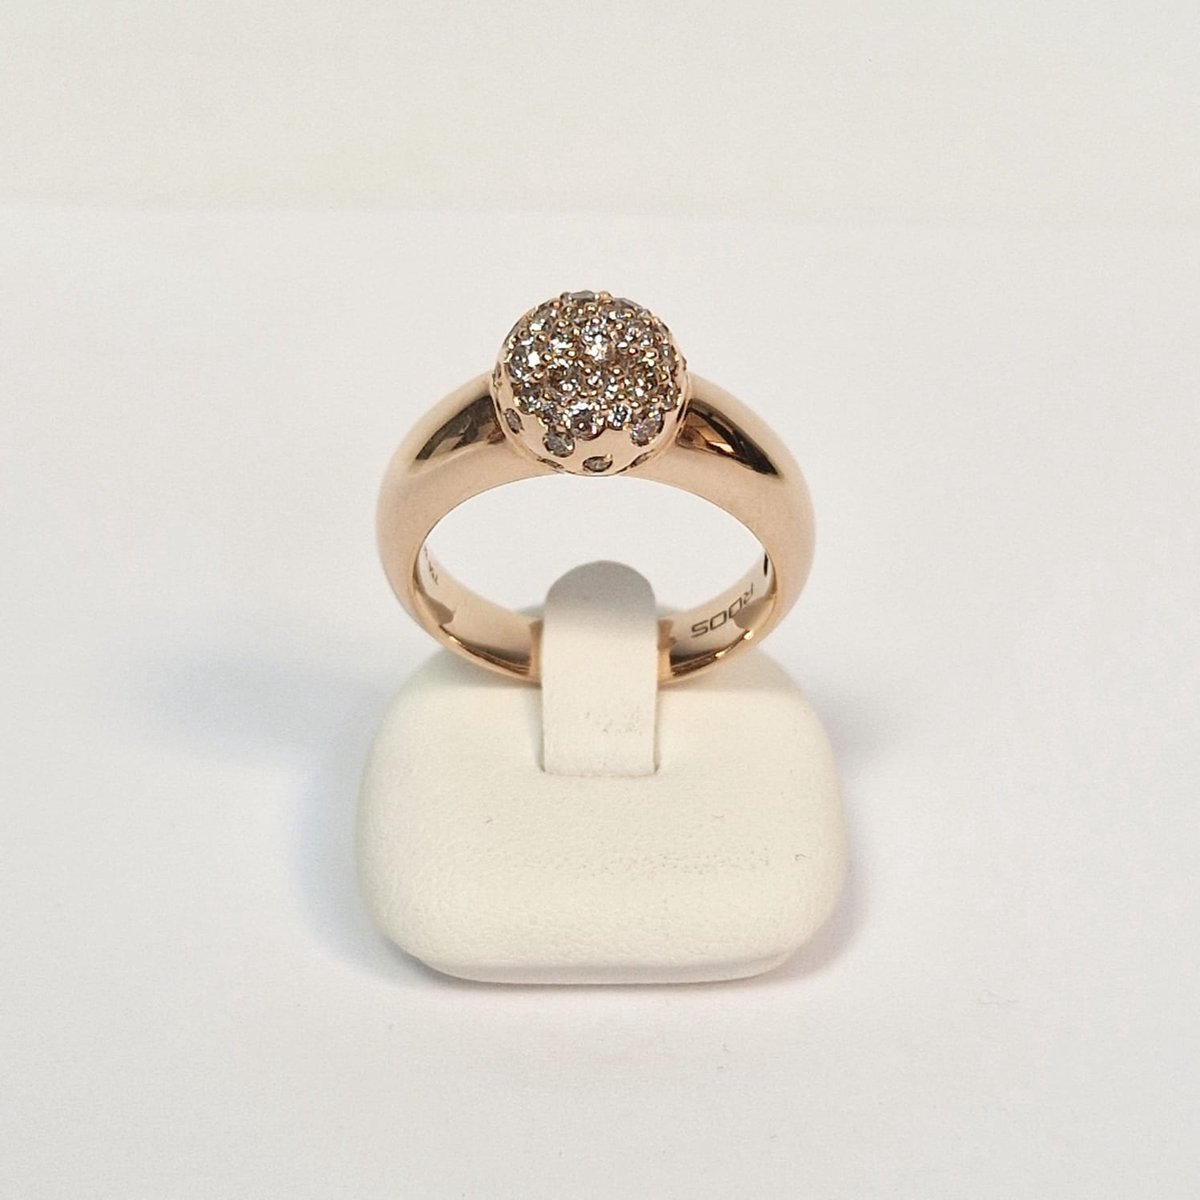 ROOS - 106R84BR18 - ring - roségoud - 18 krt - champagne diamant - sale